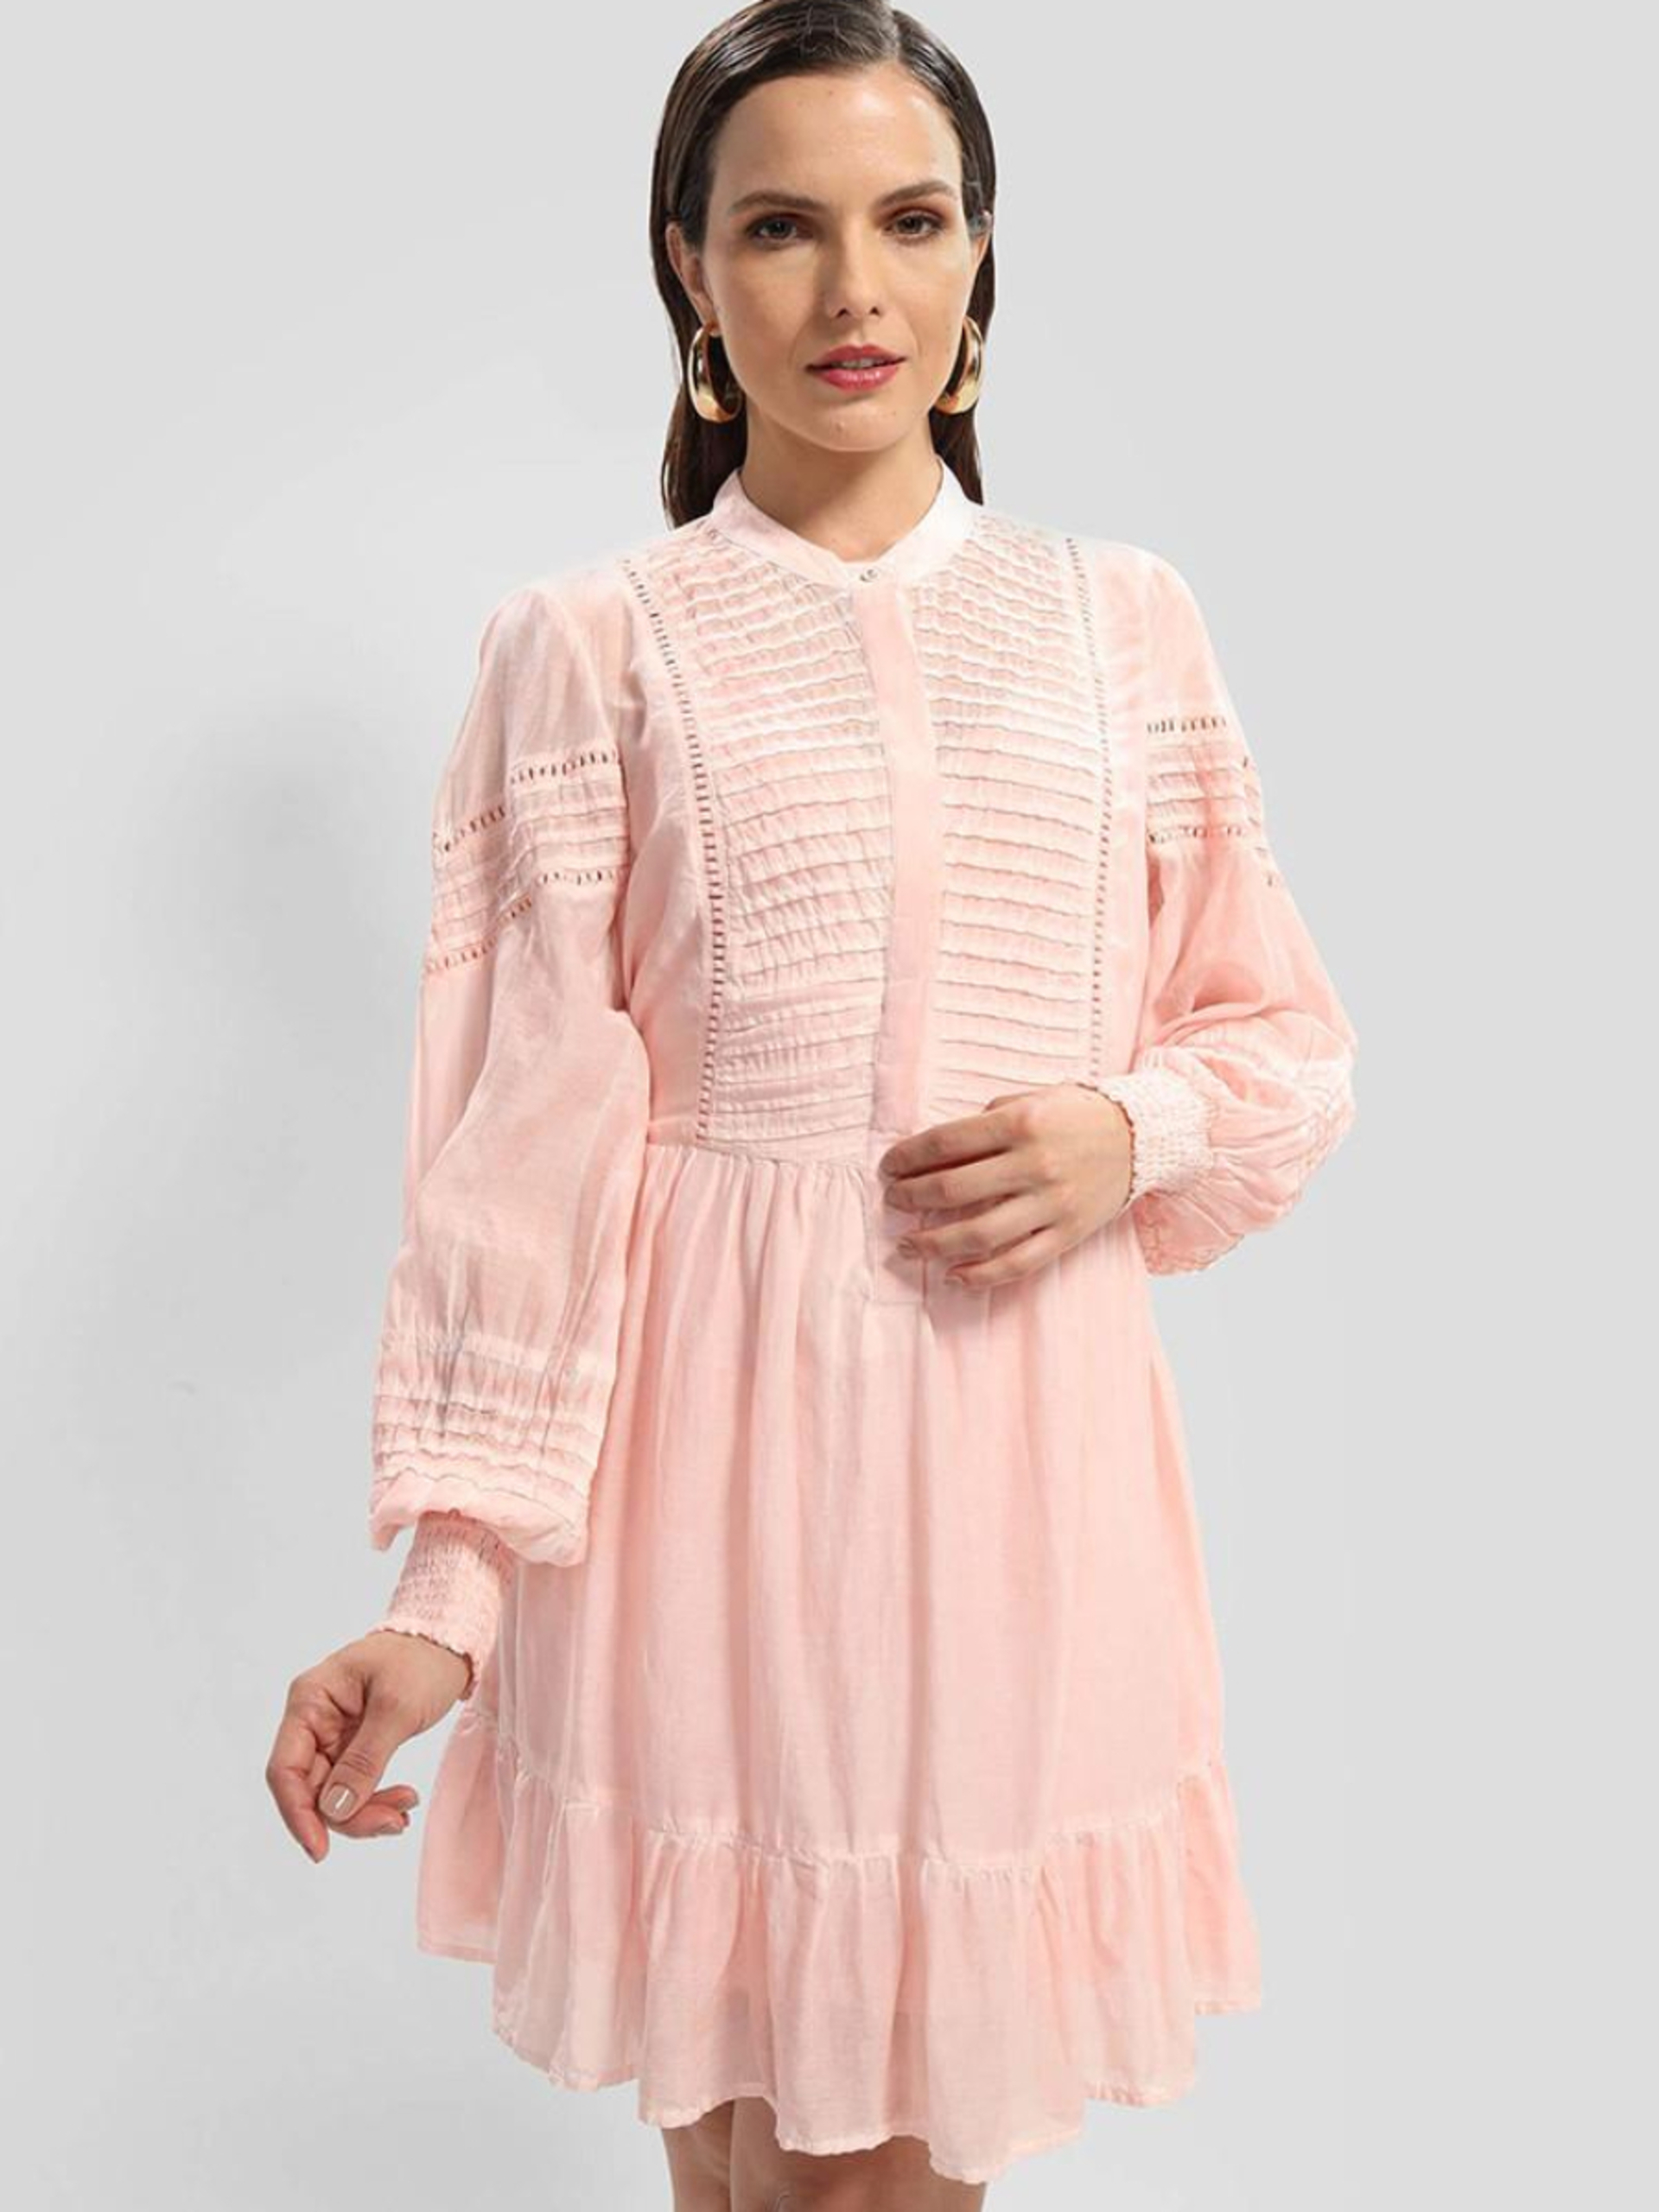 Guess dámské růžové šaty - XS (F6W9)